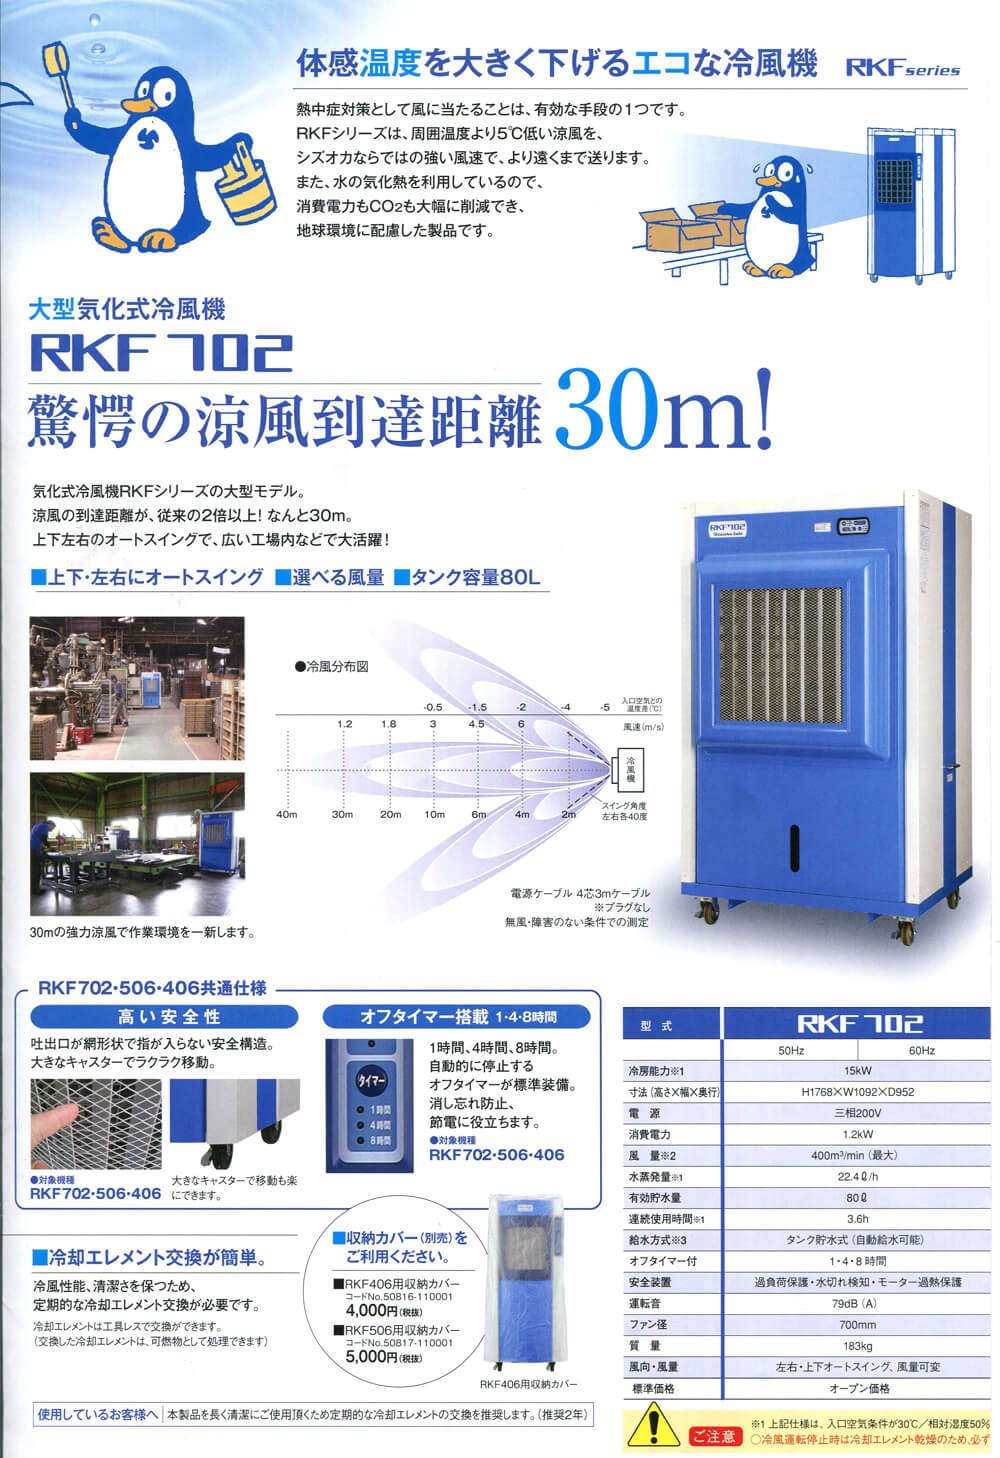 静岡製機 RKF702 気化式冷風機【数量限定品】 ウエダ金物【公式サイト】